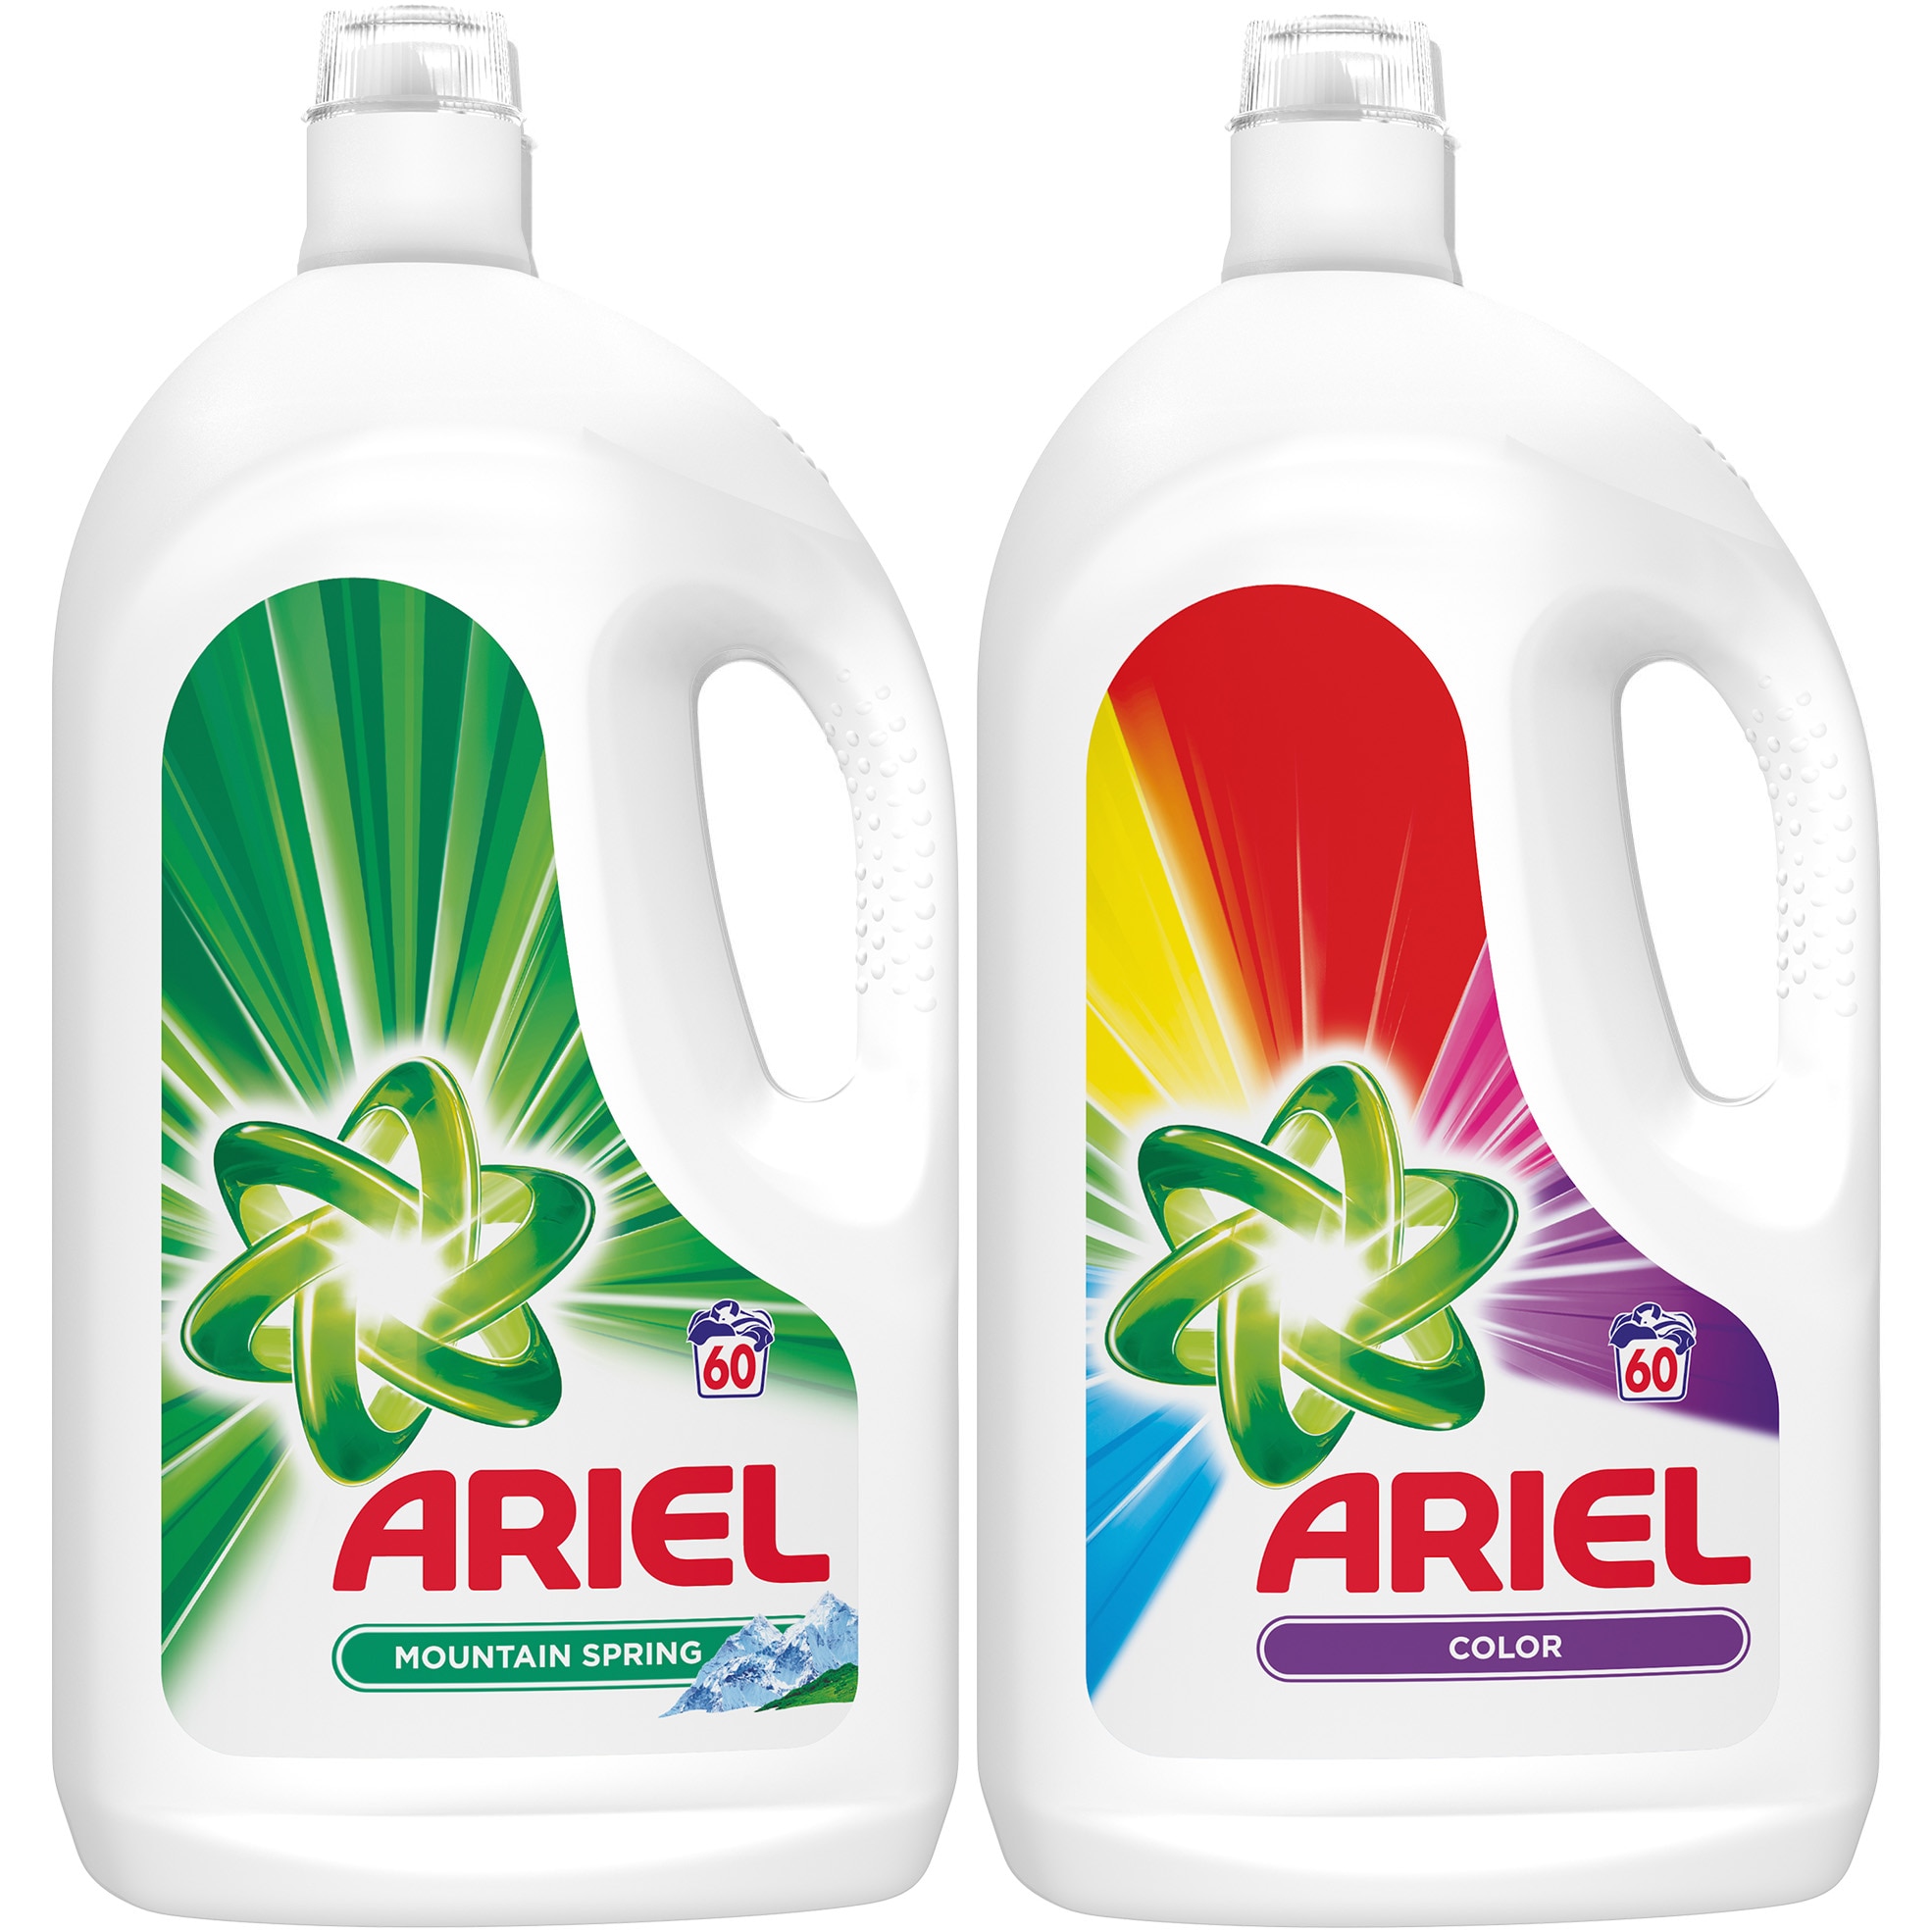 viteză ars stoarce  Pachet promo detergent lichid Ariel: Mountain Spring 60 spalari, 3.3 l &  Color 60 spalari, 3.3 l - eMAG.ro